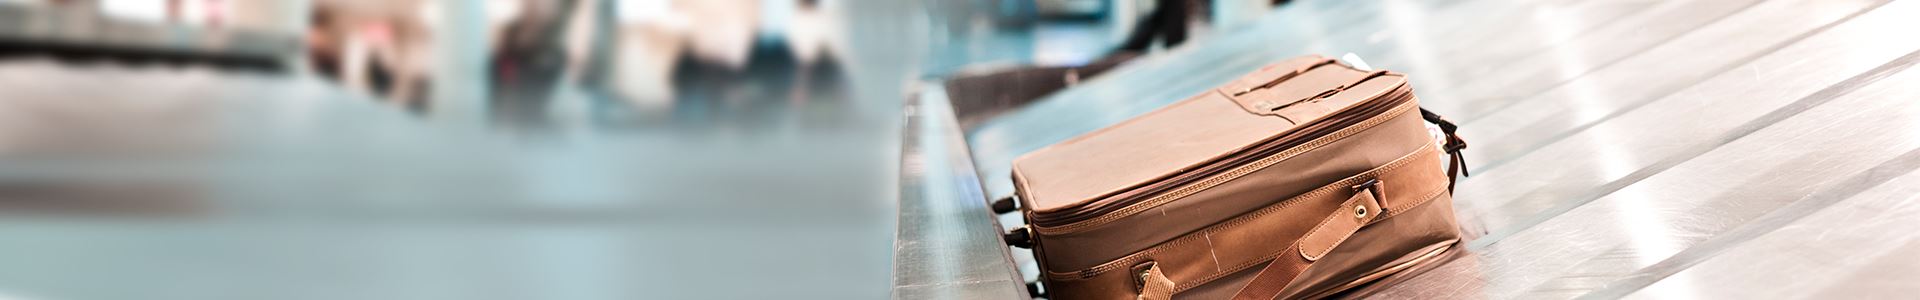 La imagen muestra una maleta marrón sobre una cinta transportadora de equipaje del aeropuerto. No hay otras maletas junto a ella.